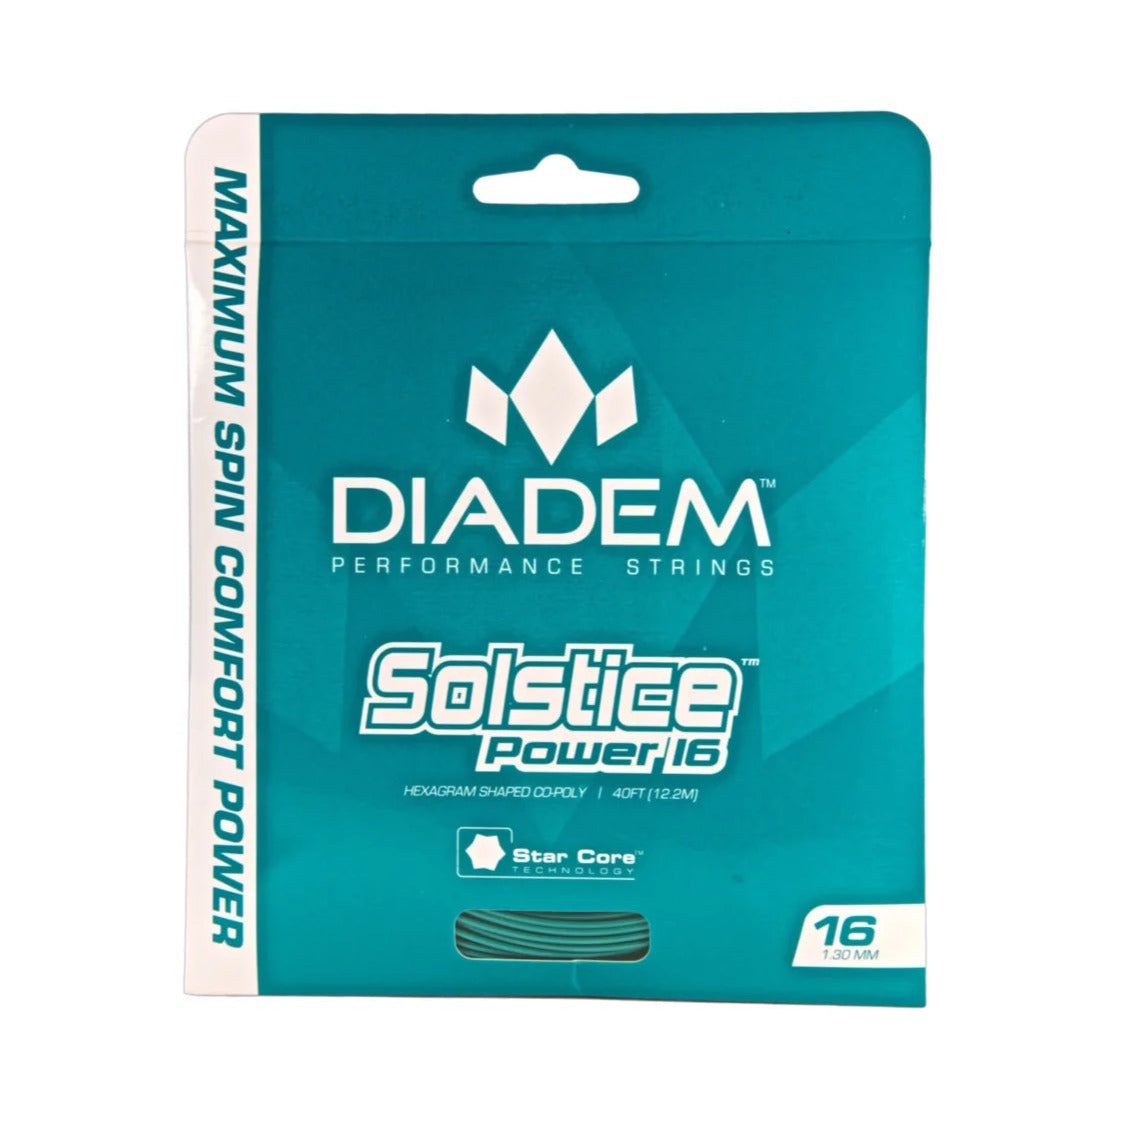 Diadem Solstice Power